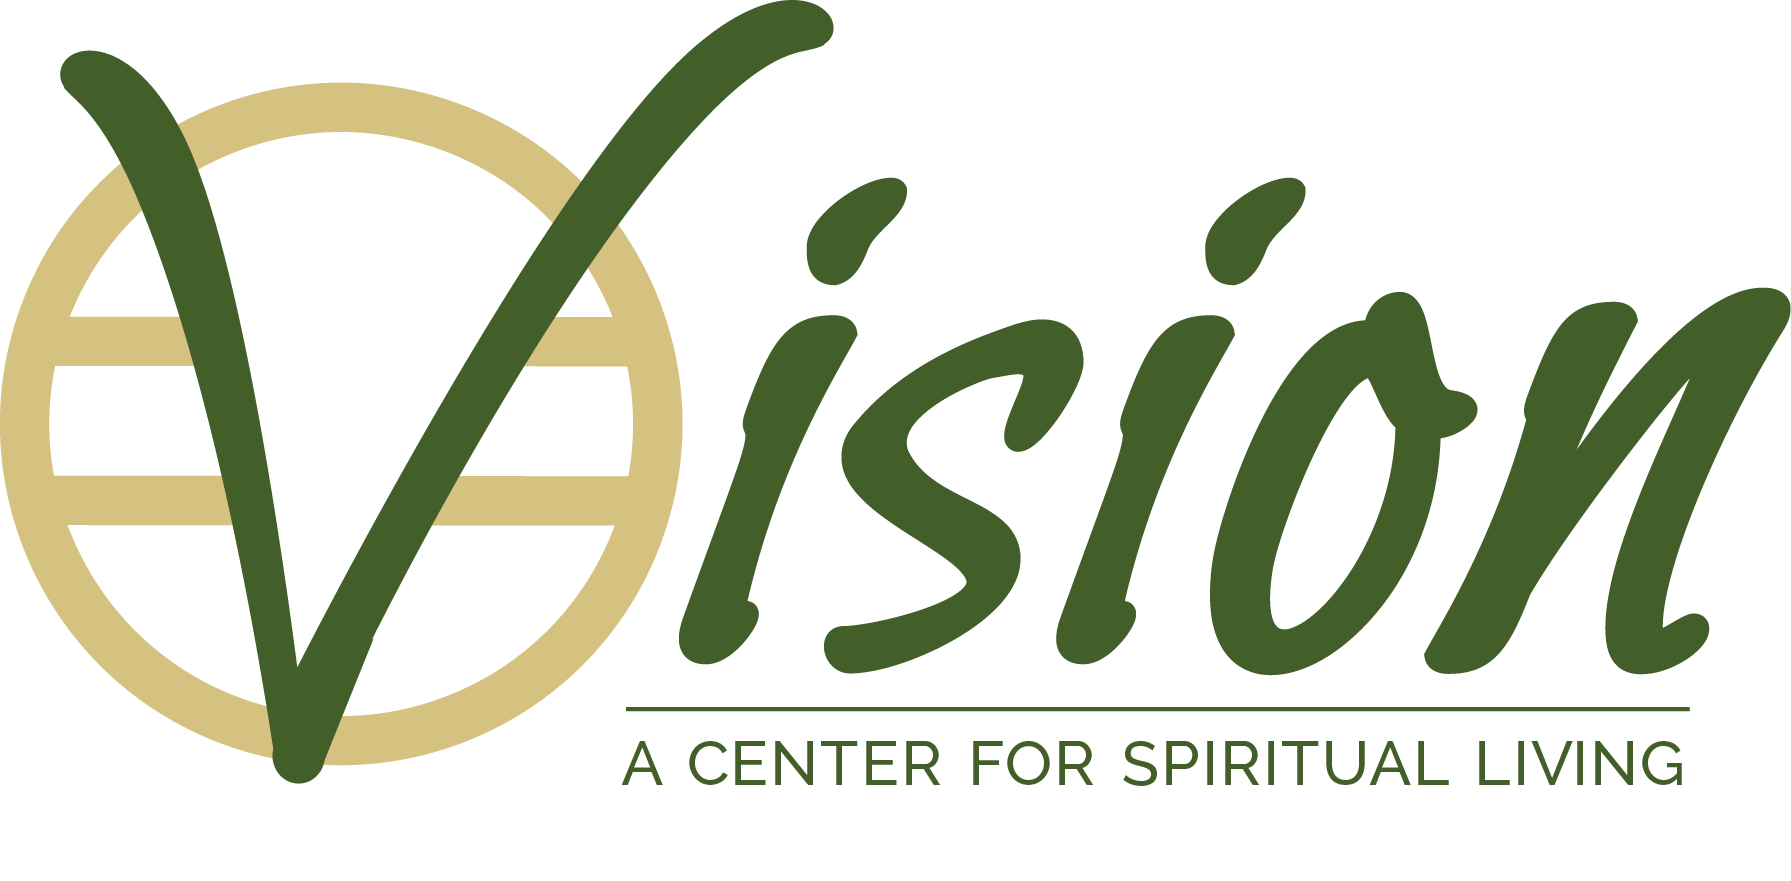 VISION: A Center For Spiritual Living